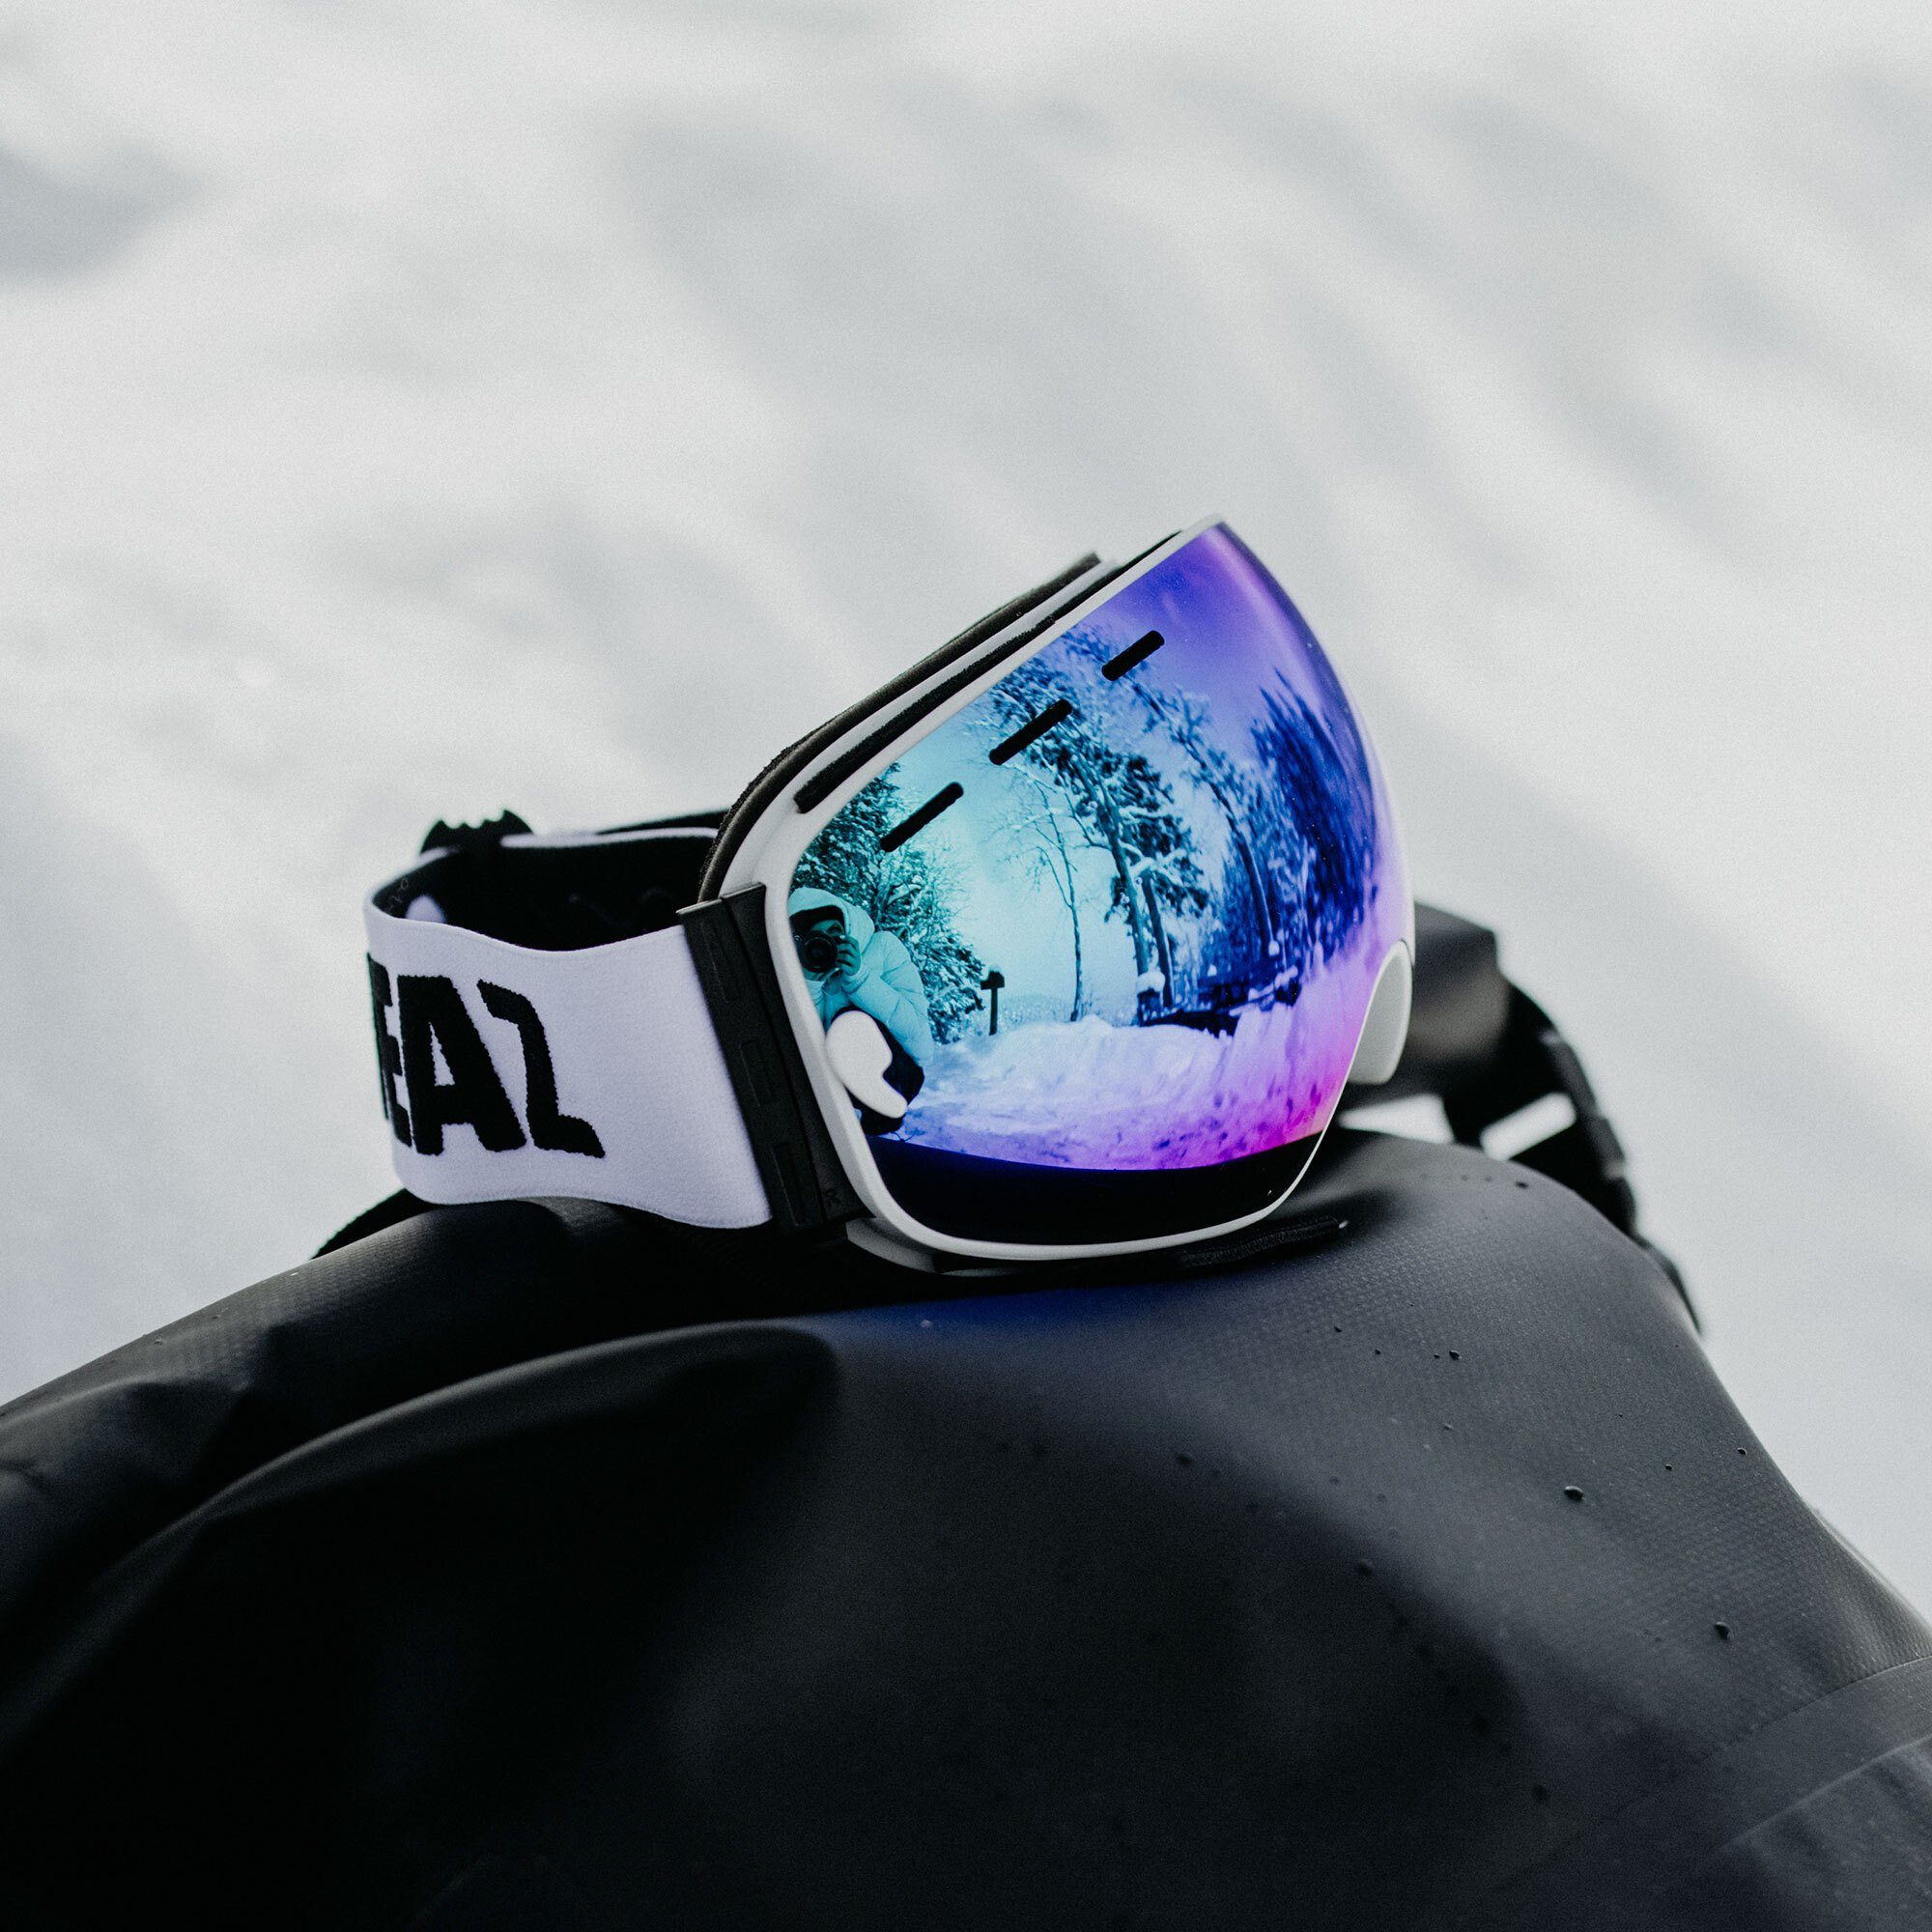 Kinder Accessoires YEAZ Skibrille XTRM-SUMMIT, Premium-Ski- und Snowboardbrille für Erwachsene und Jugendliche